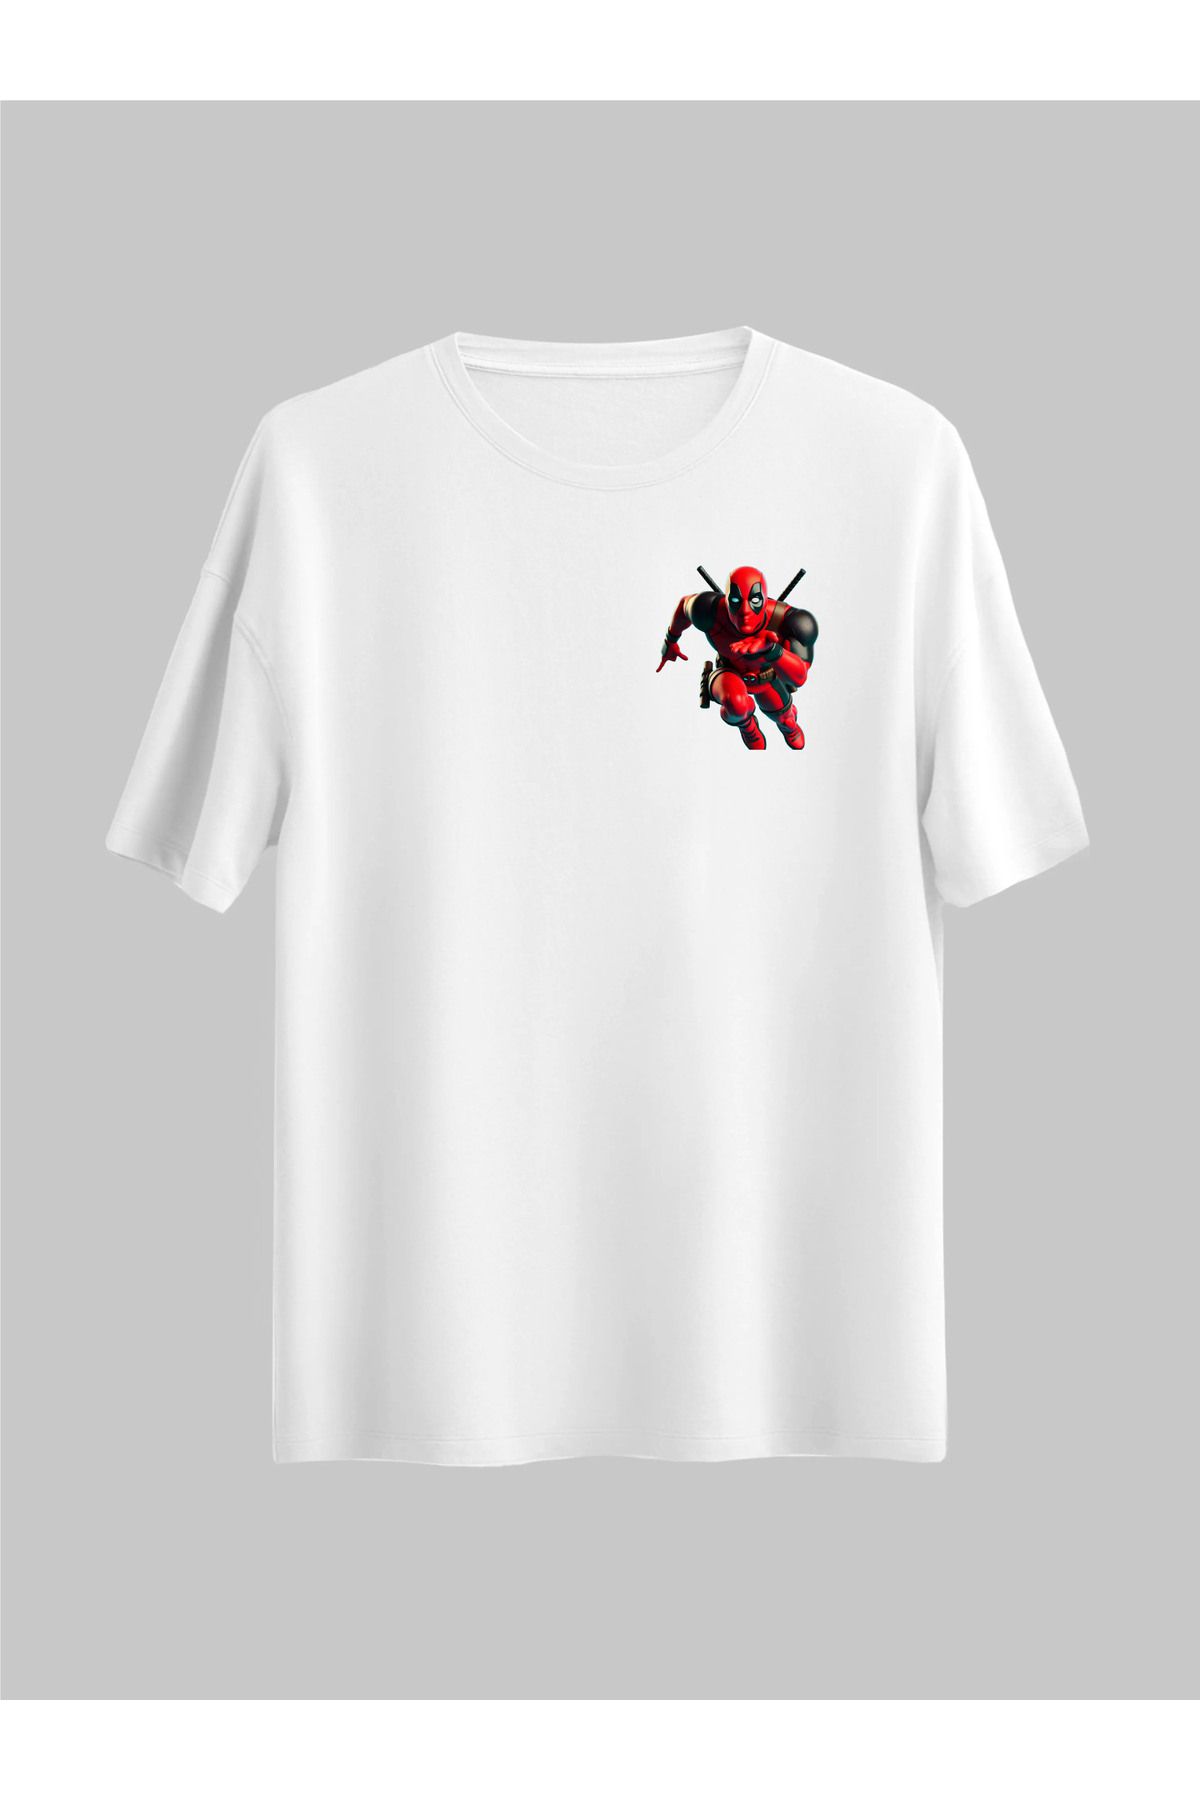 donamod 2 li Siyah Beyaz Oversize Unisex Deadpool ve Wolverine Marvel Arkadaş Sevgili Hediye Tişört T-shirt